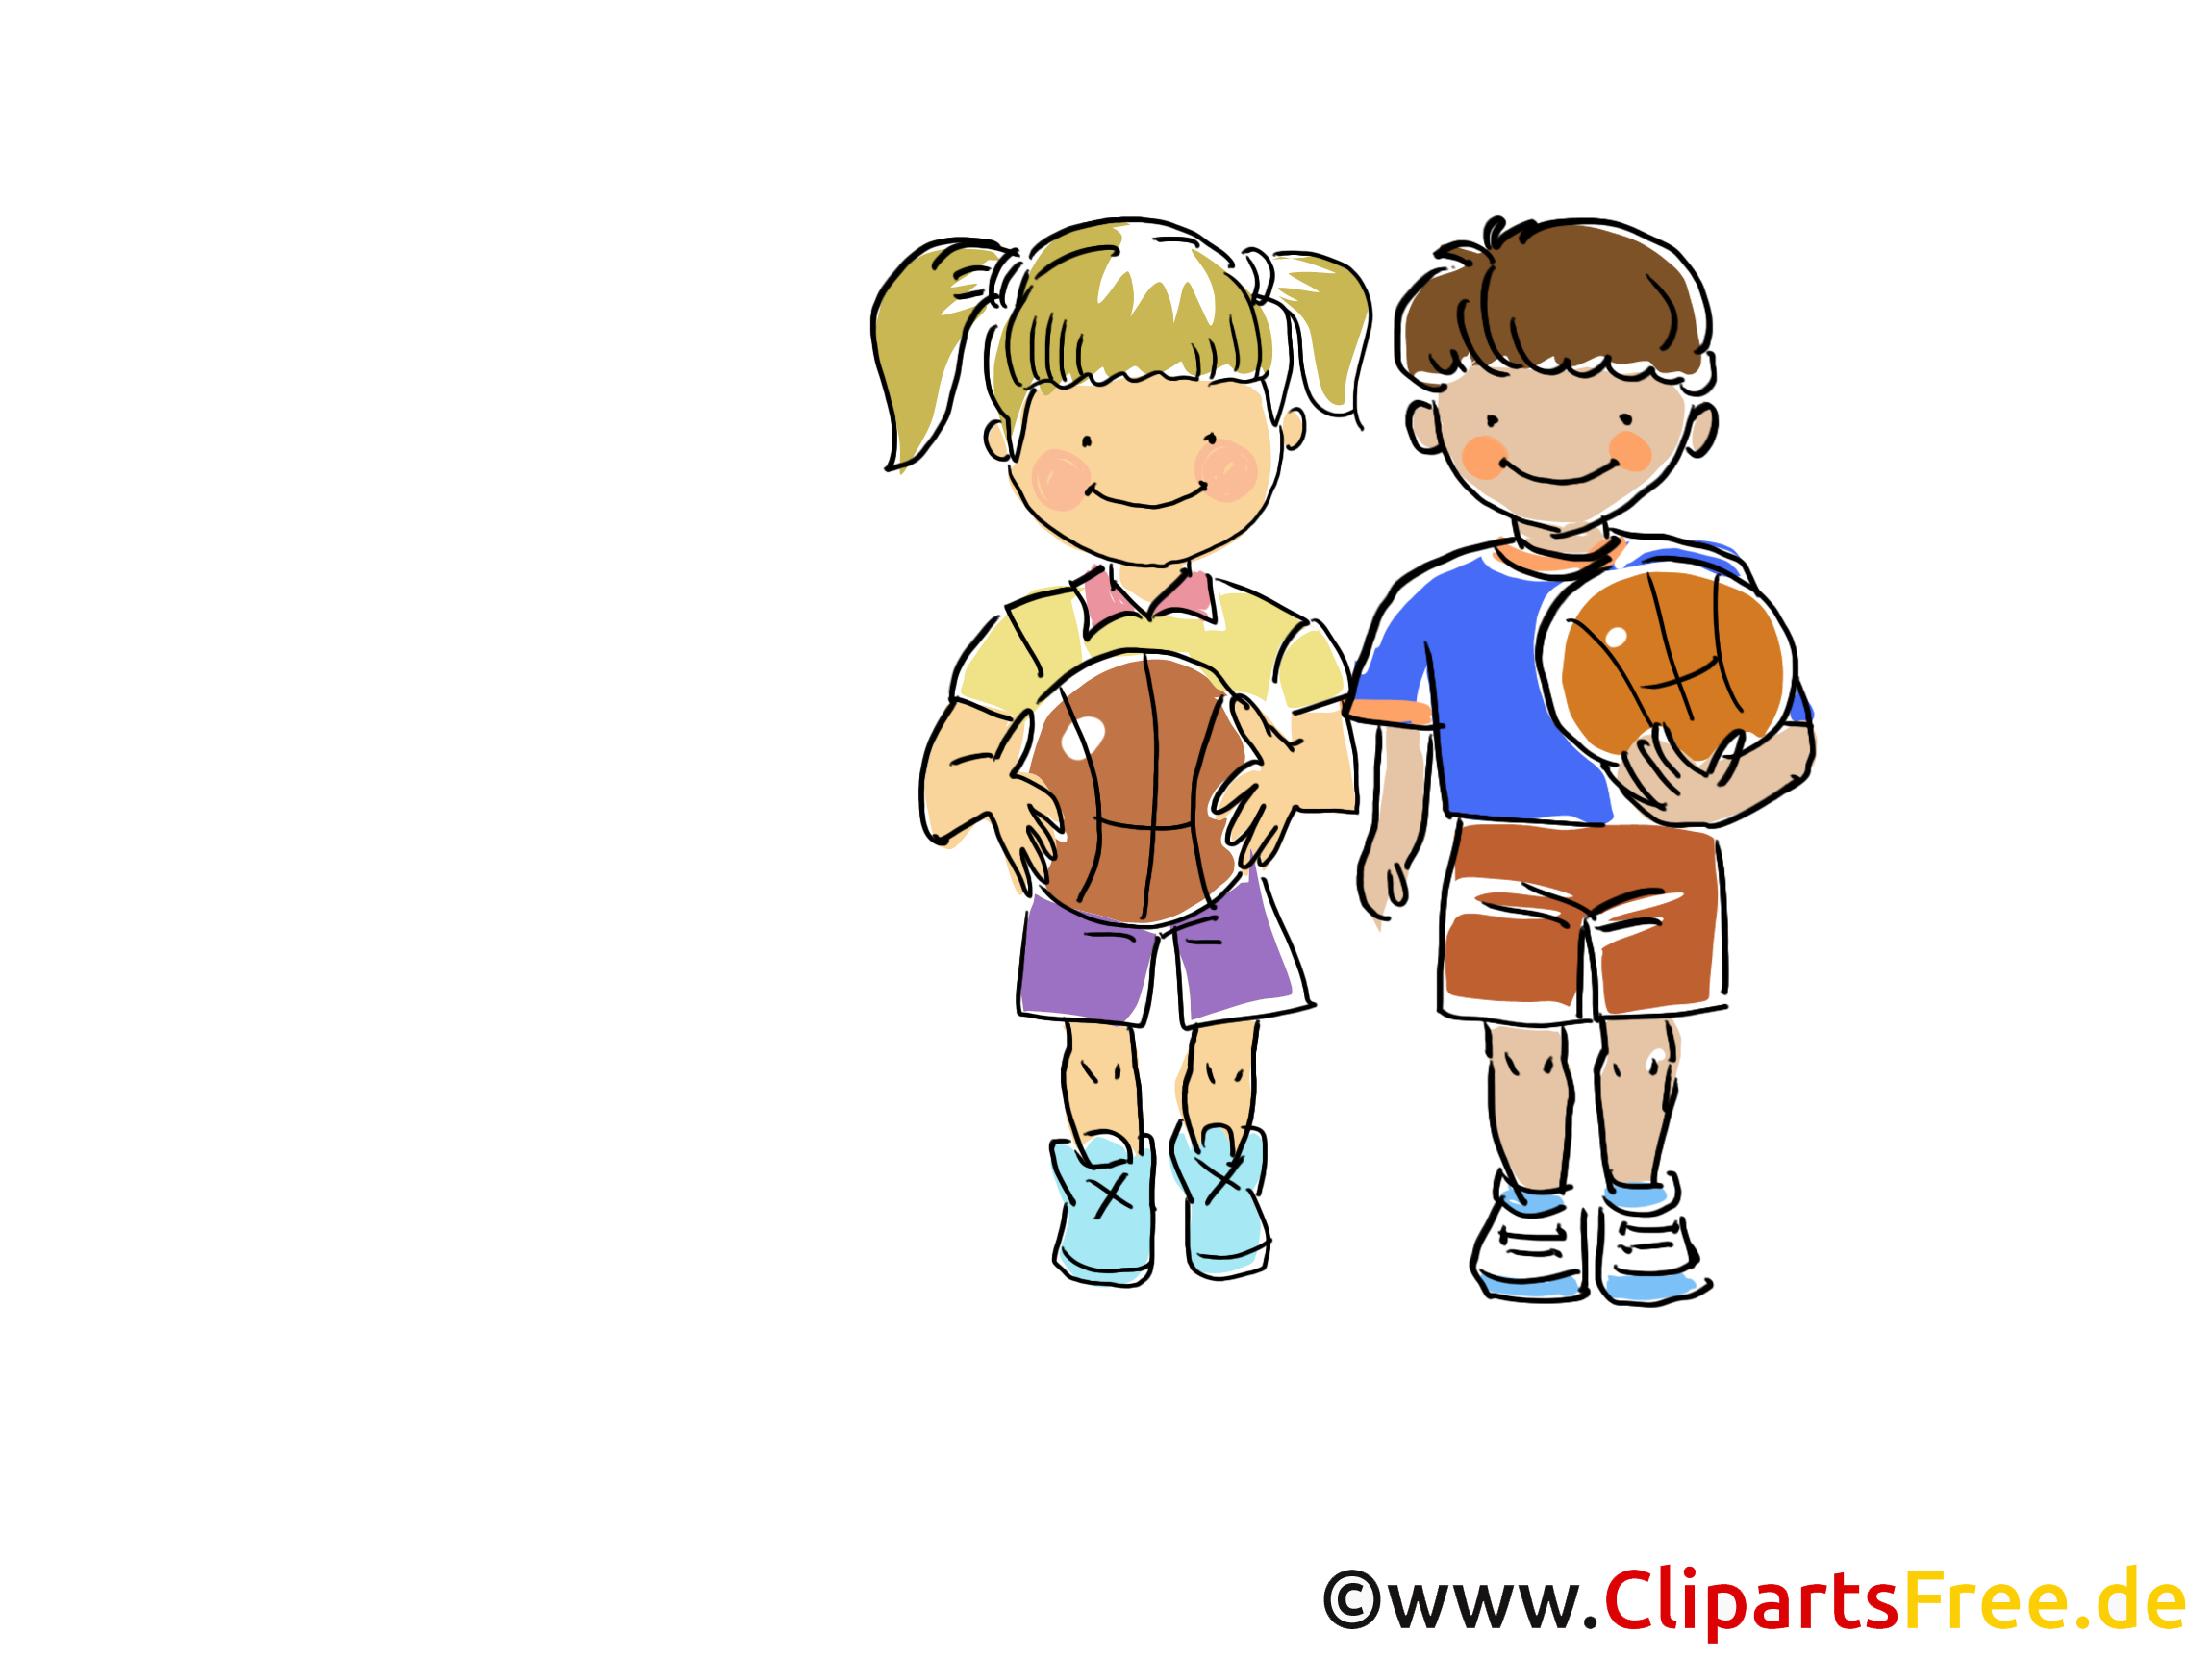 Enfants illustration - Basket-ball images gratuites